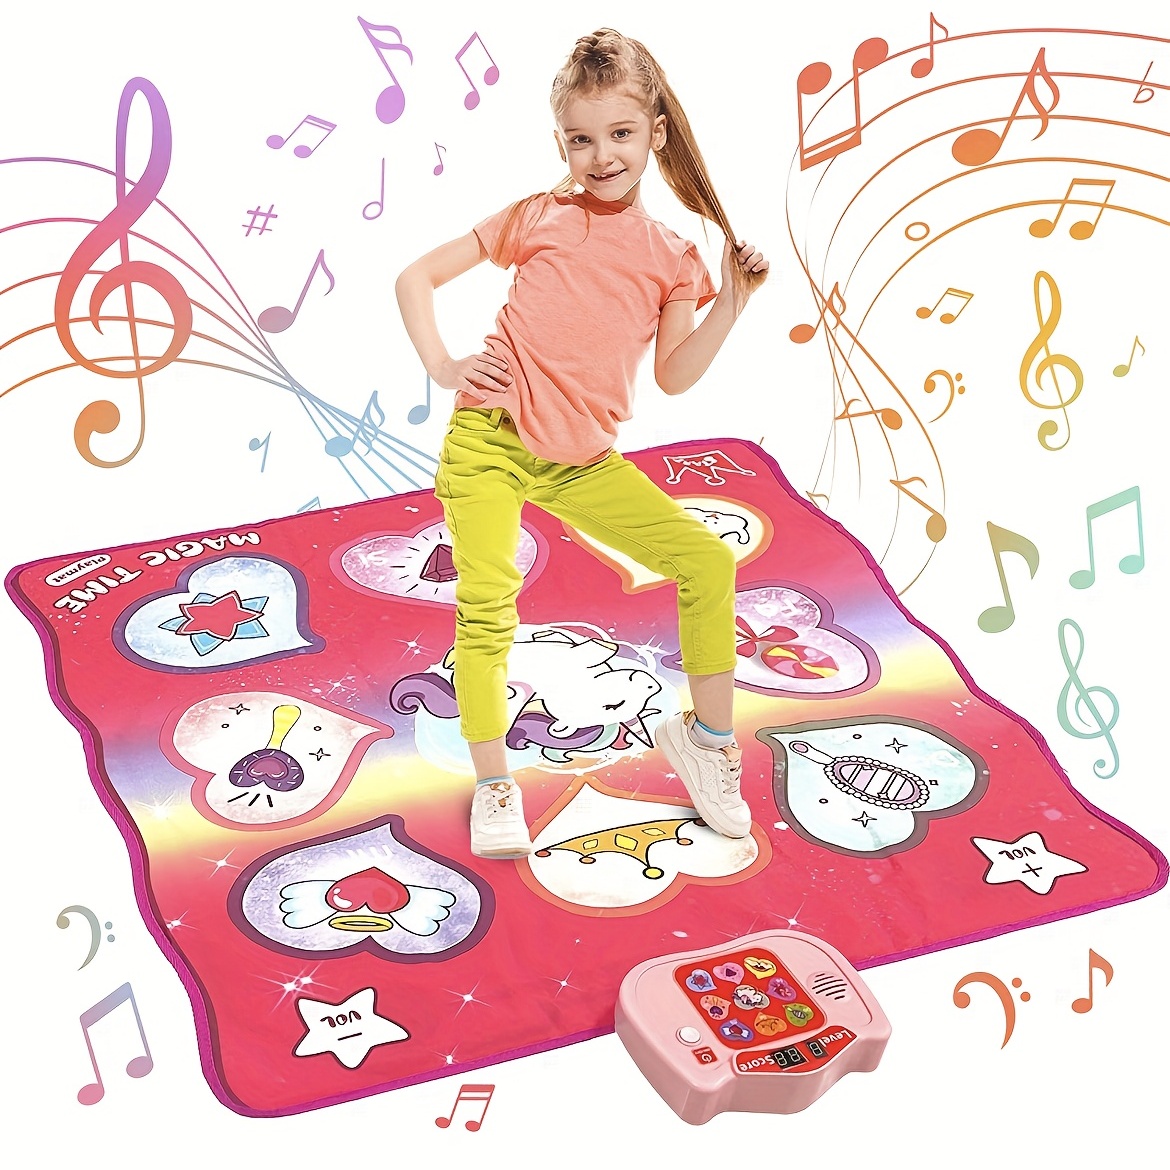 Joyjoz Alfombrilla de baile de juguete de regalo para niños de 3 a 12 años,  almohadilla de baile de música electrónica con Bluetooth inalámbrico, 5